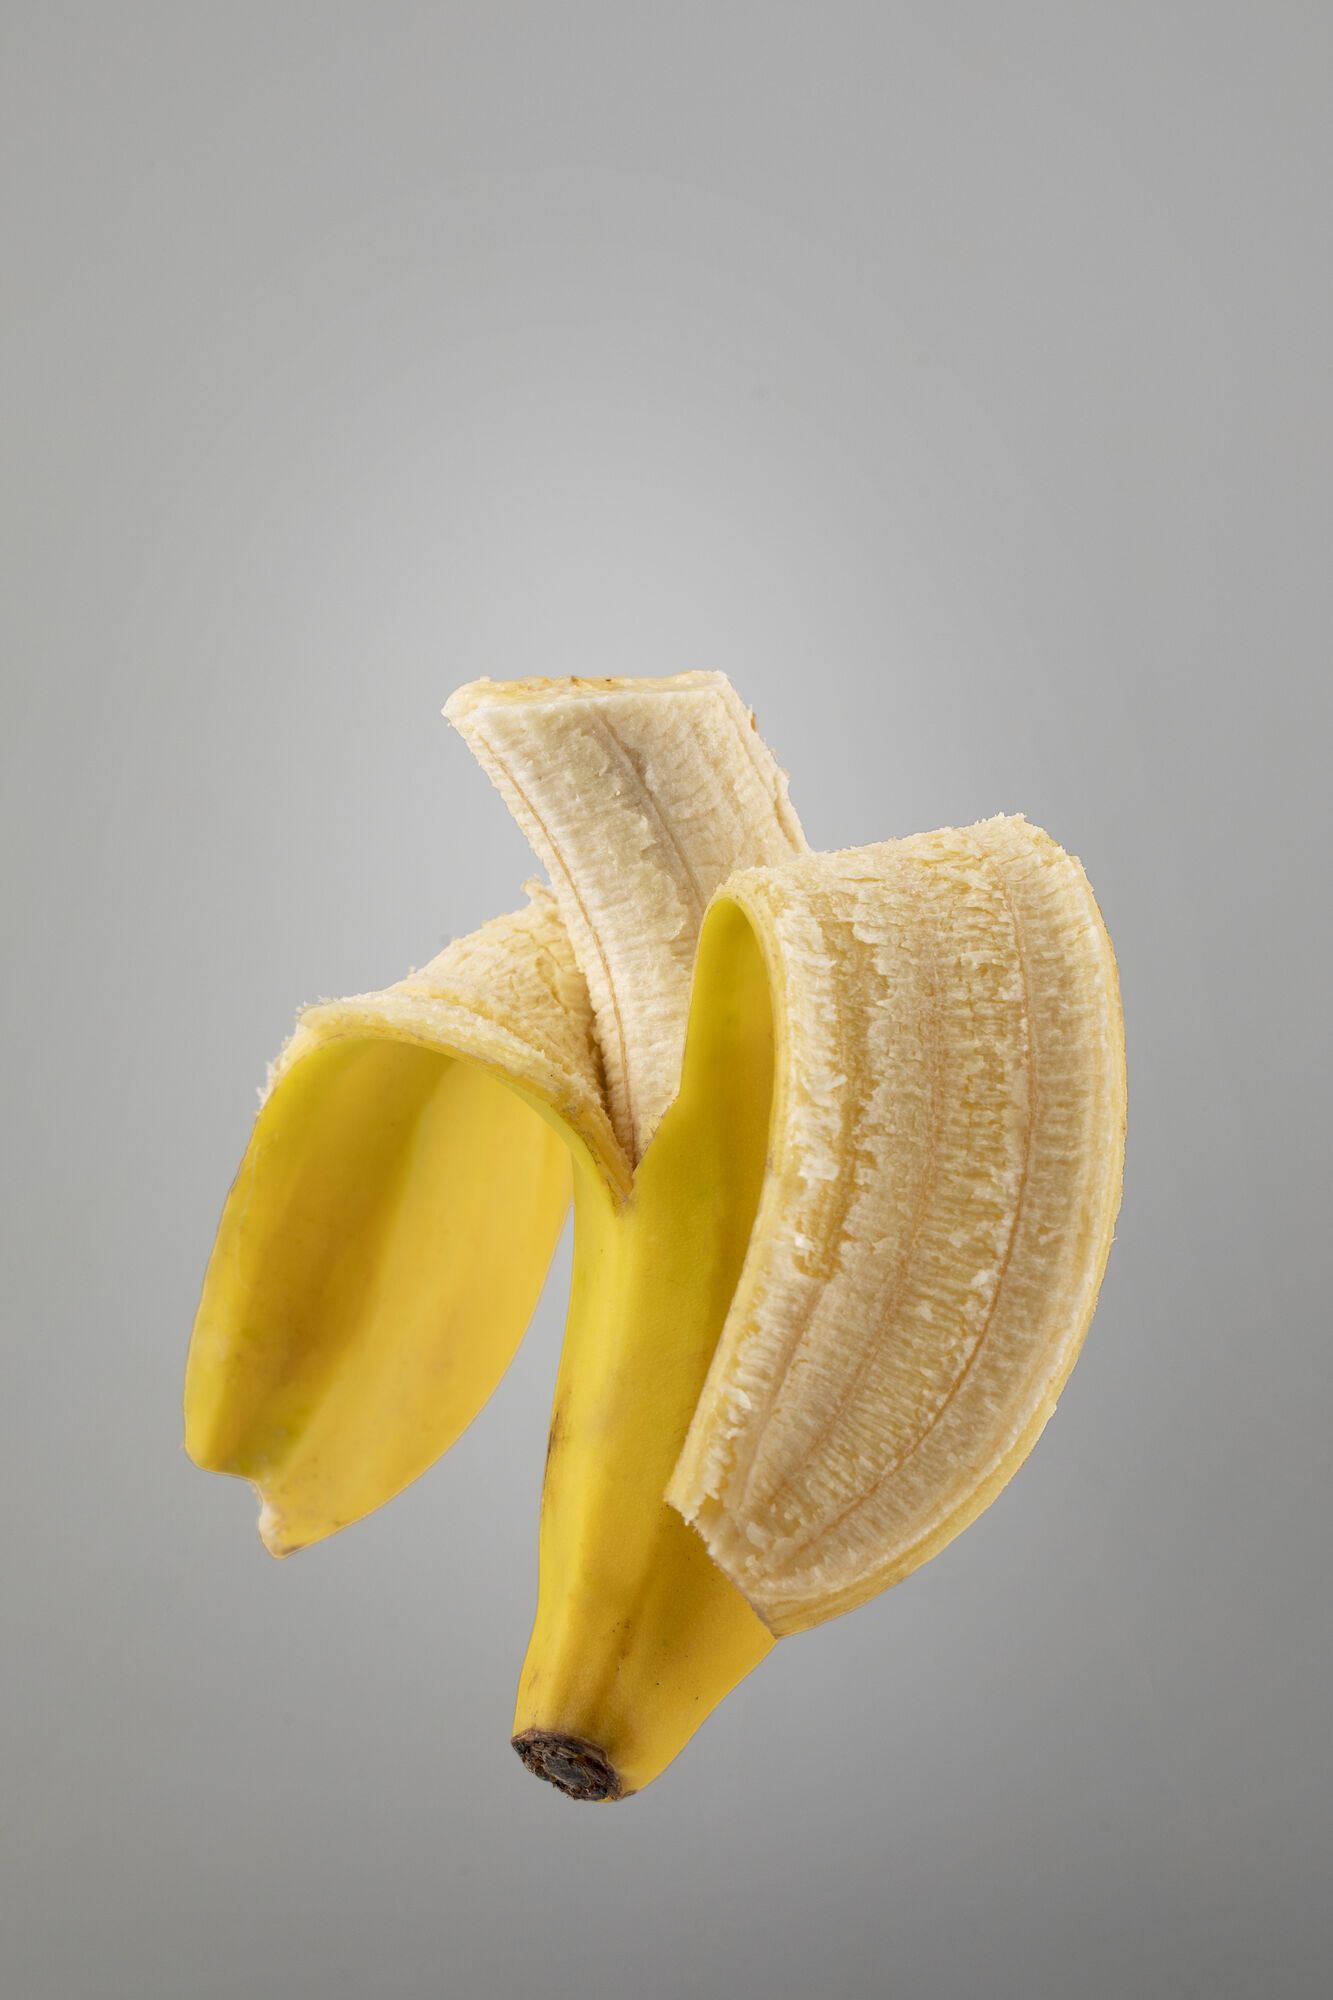 Świeży banan jest pełen witamin.